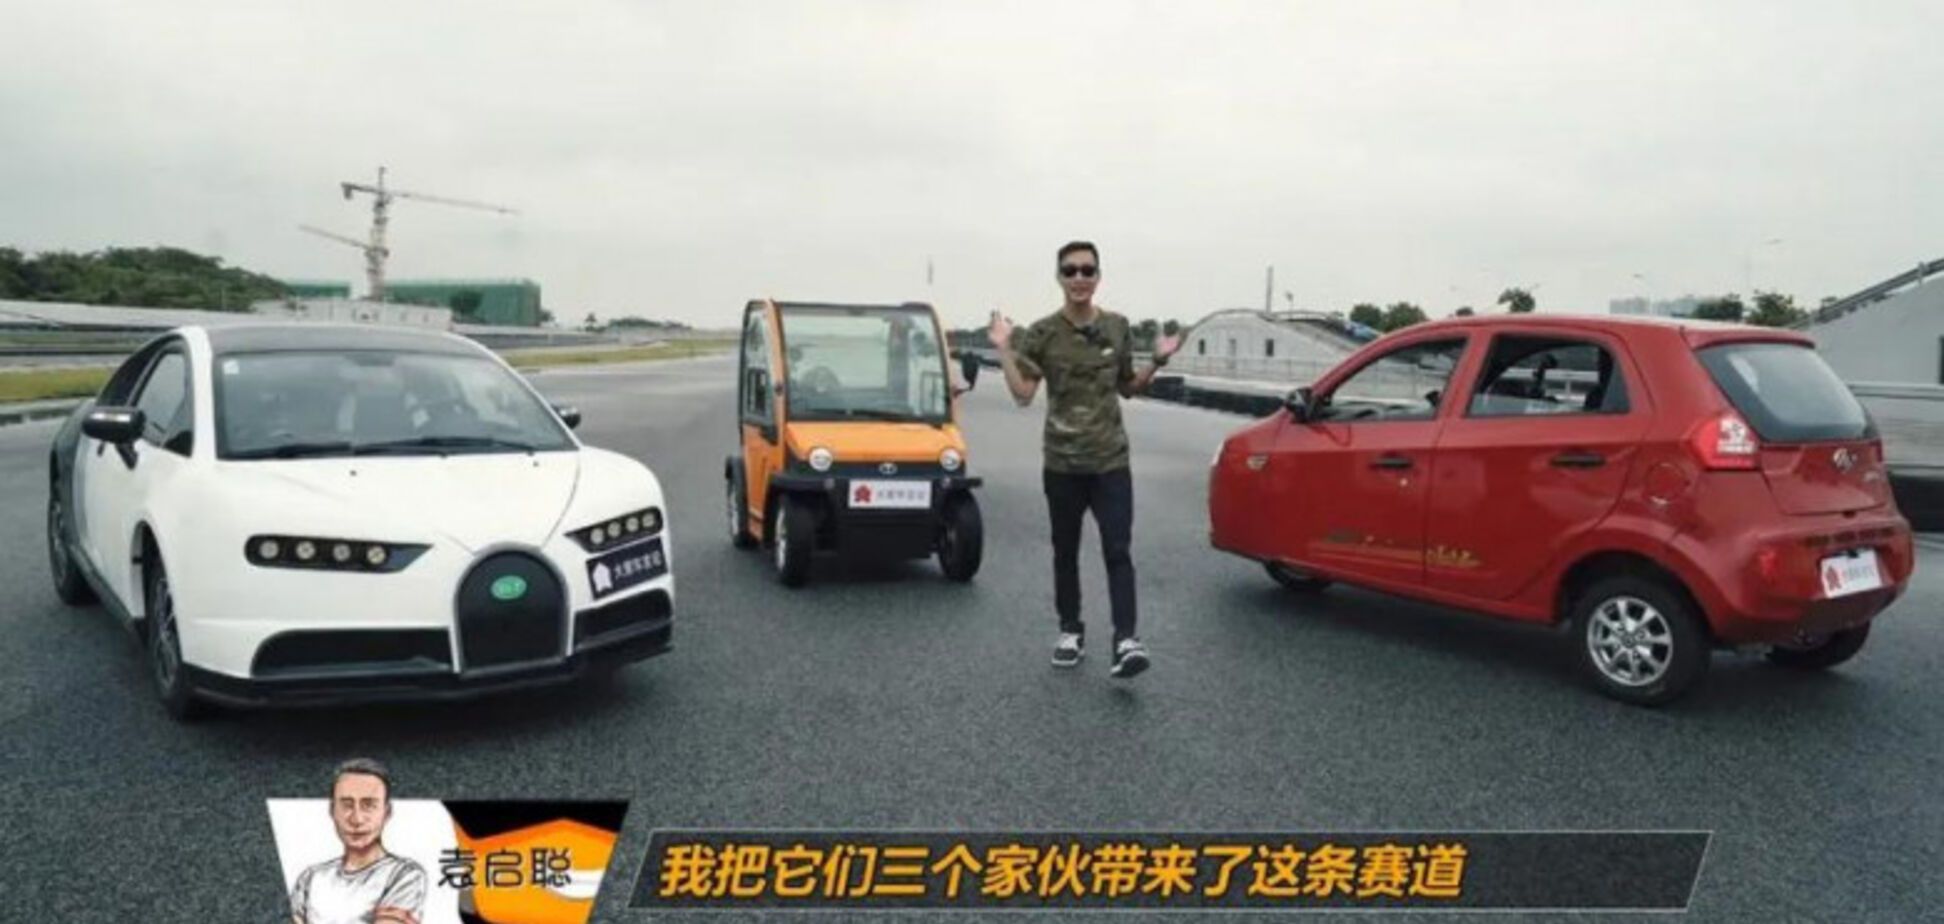 Тест трёх глупых китайских автомобилей закончился их уничтожением